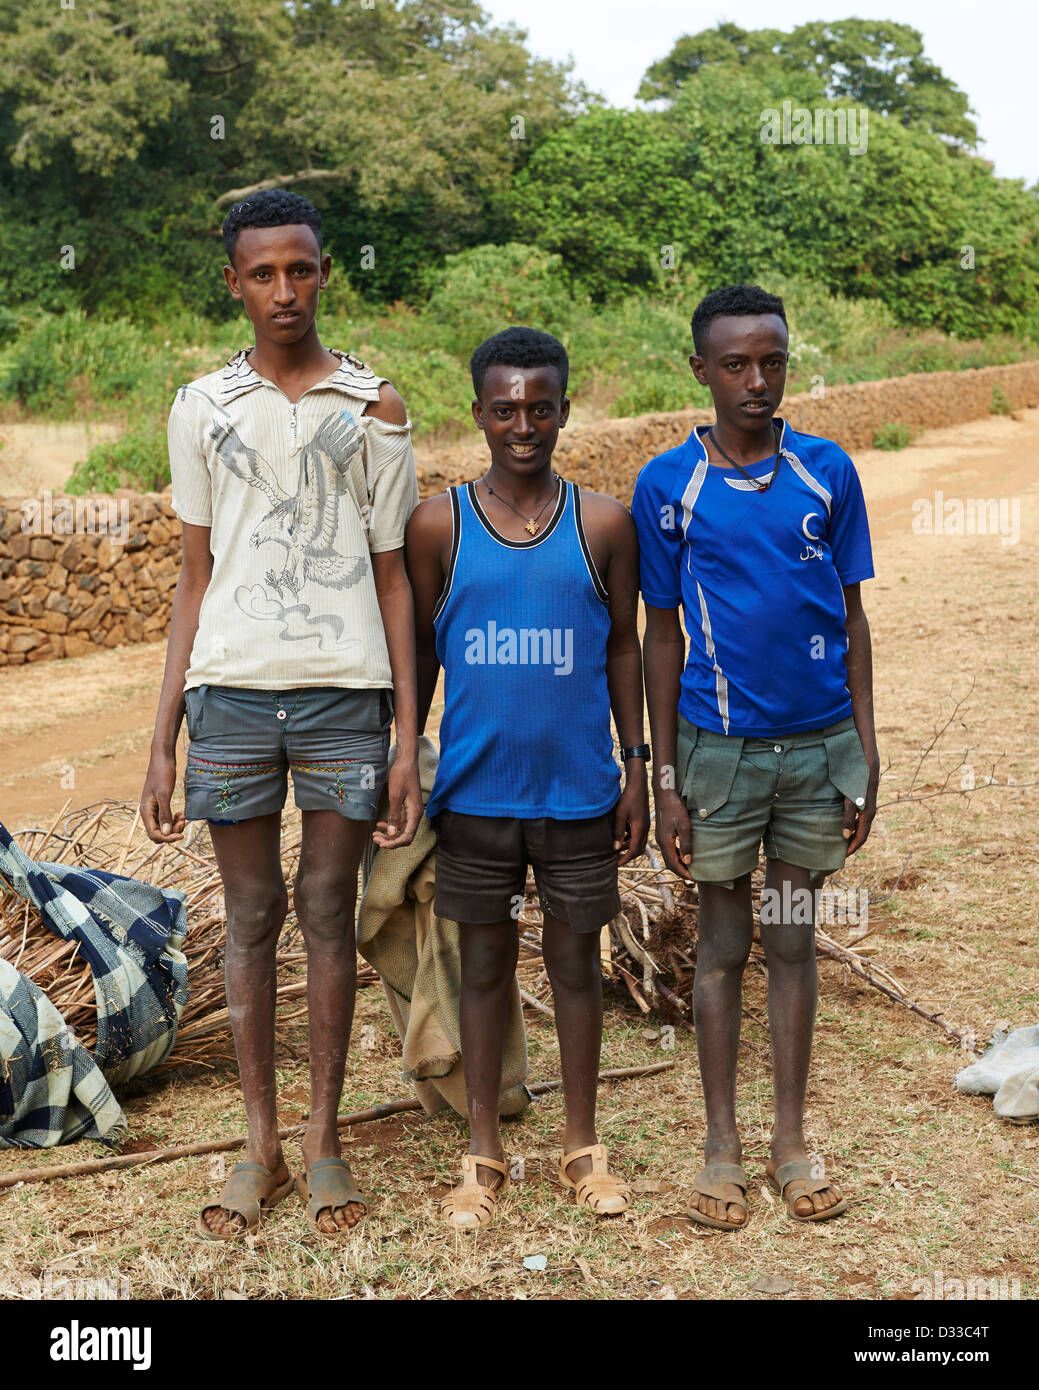 Tre ragazzi locali raccogliere legname da vendere per legna da ardere posare per un ritratto Foto Stock